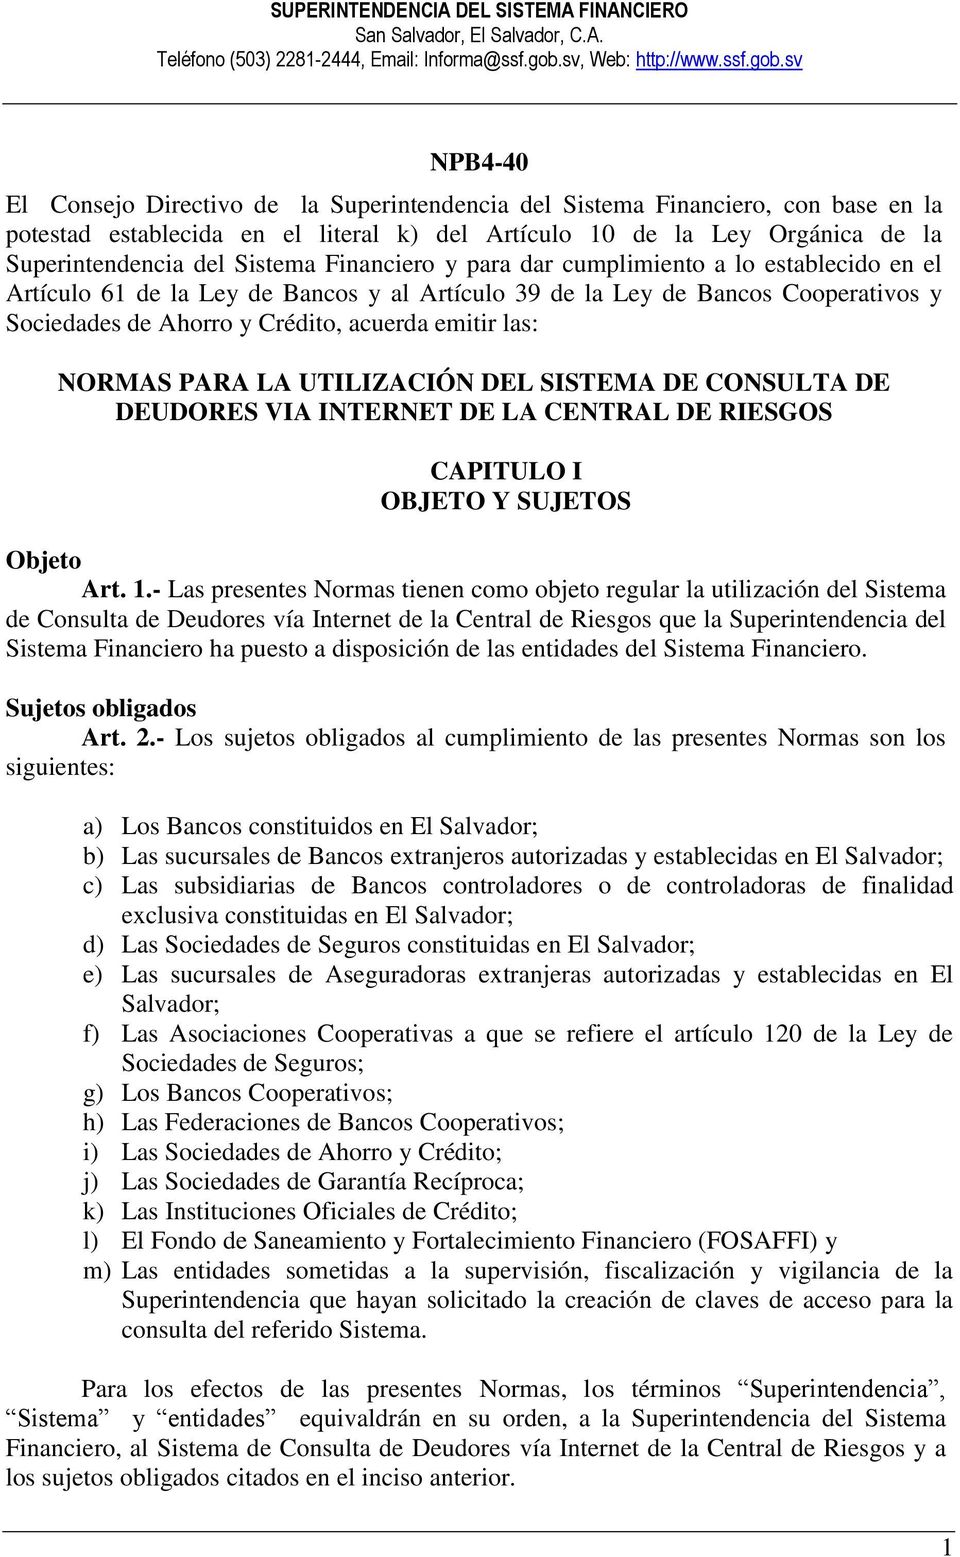 sv NPB4-40 El Consejo Directivo de la Superintendencia del Sistema Financiero, con base en la potestad establecida en el literal k) del Artículo 10 de la Ley Orgánica de la Superintendencia del